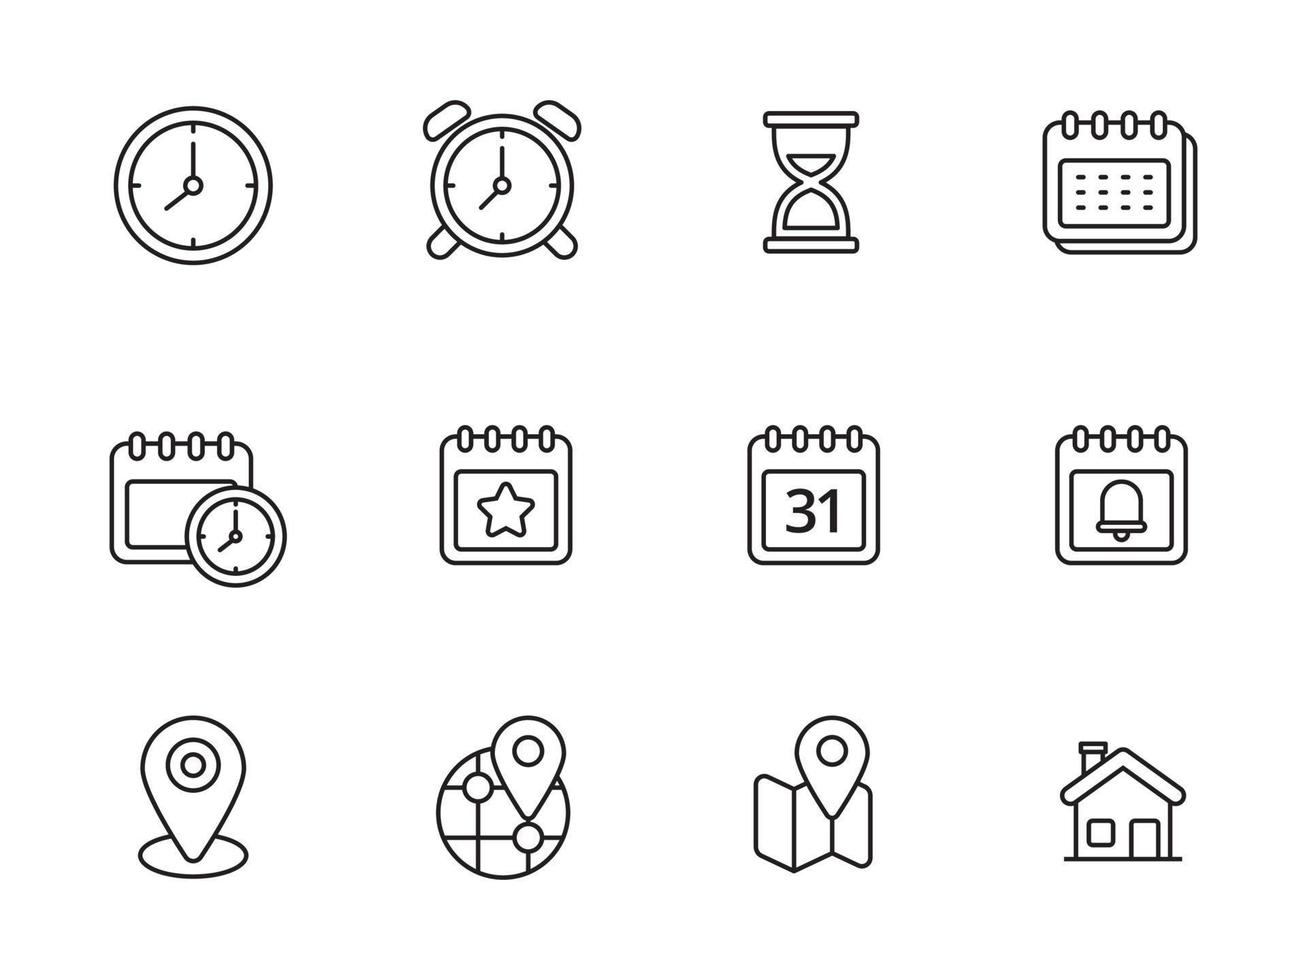 conjunto de ícones de tempo e localização com estilo linear isolado no fundo branco vetor